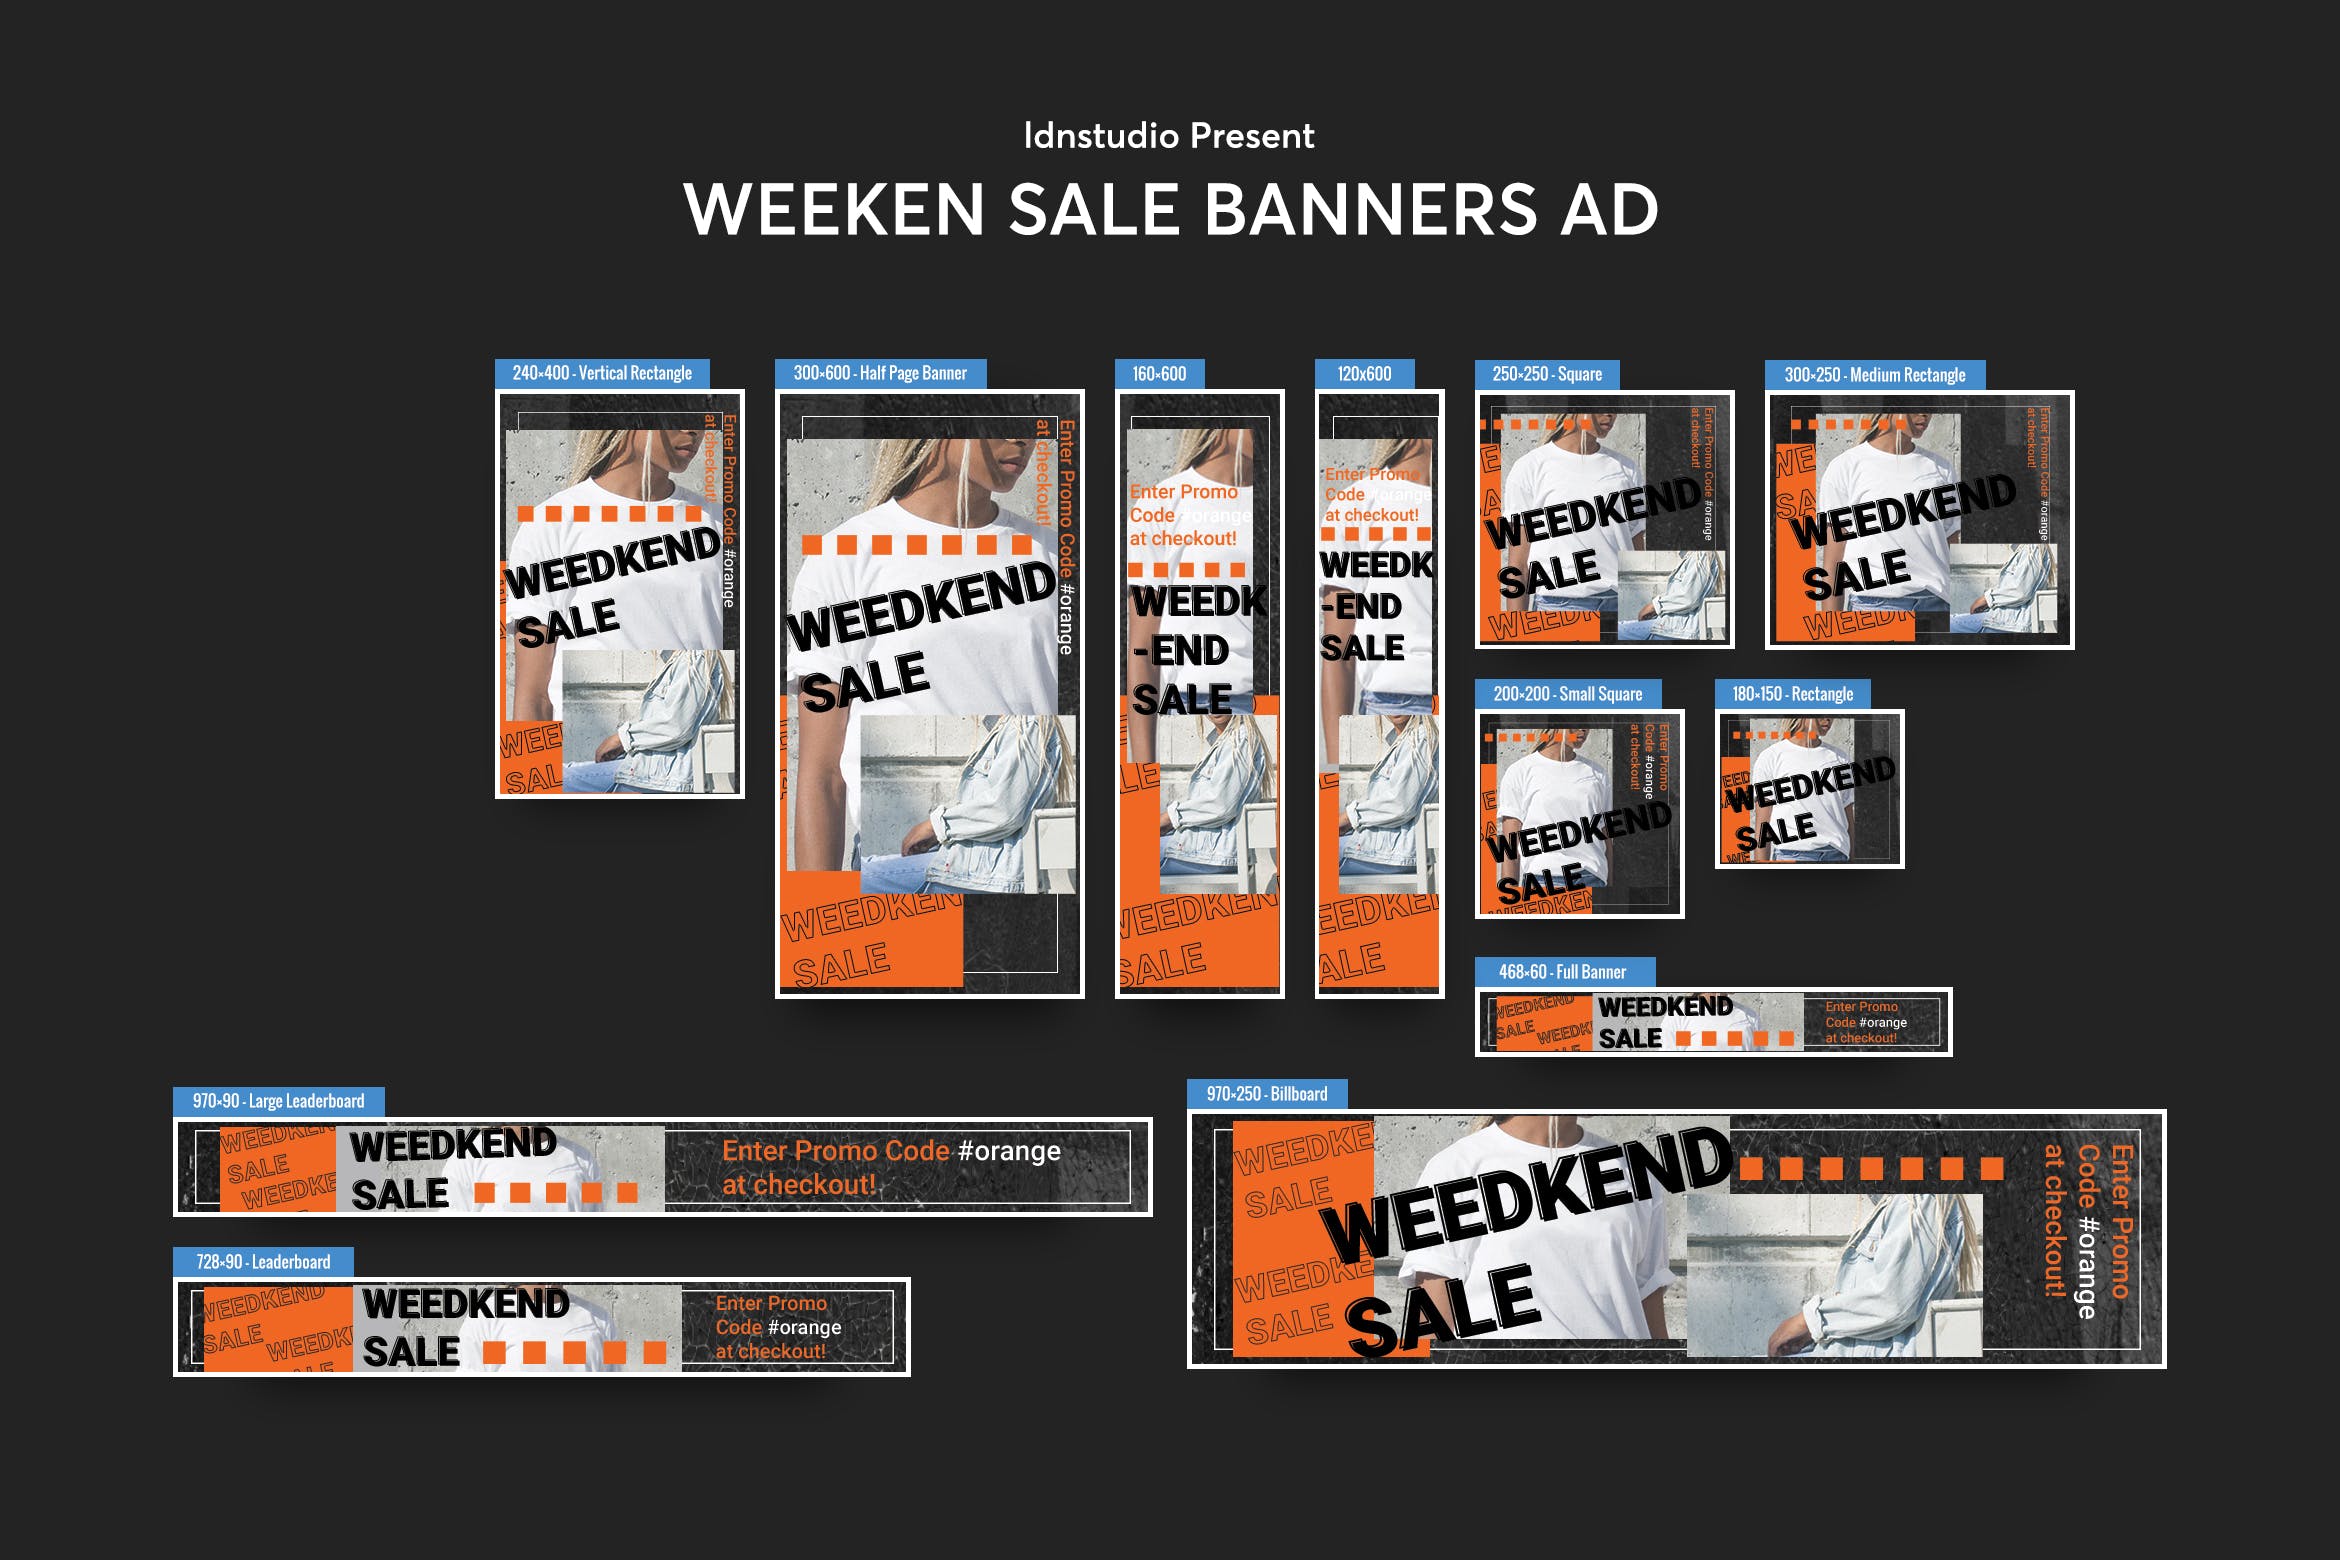 周末促销活动主题网站Banner横幅素材库精选广告模板 Weeken Sale Banners Ad PSD Template插图